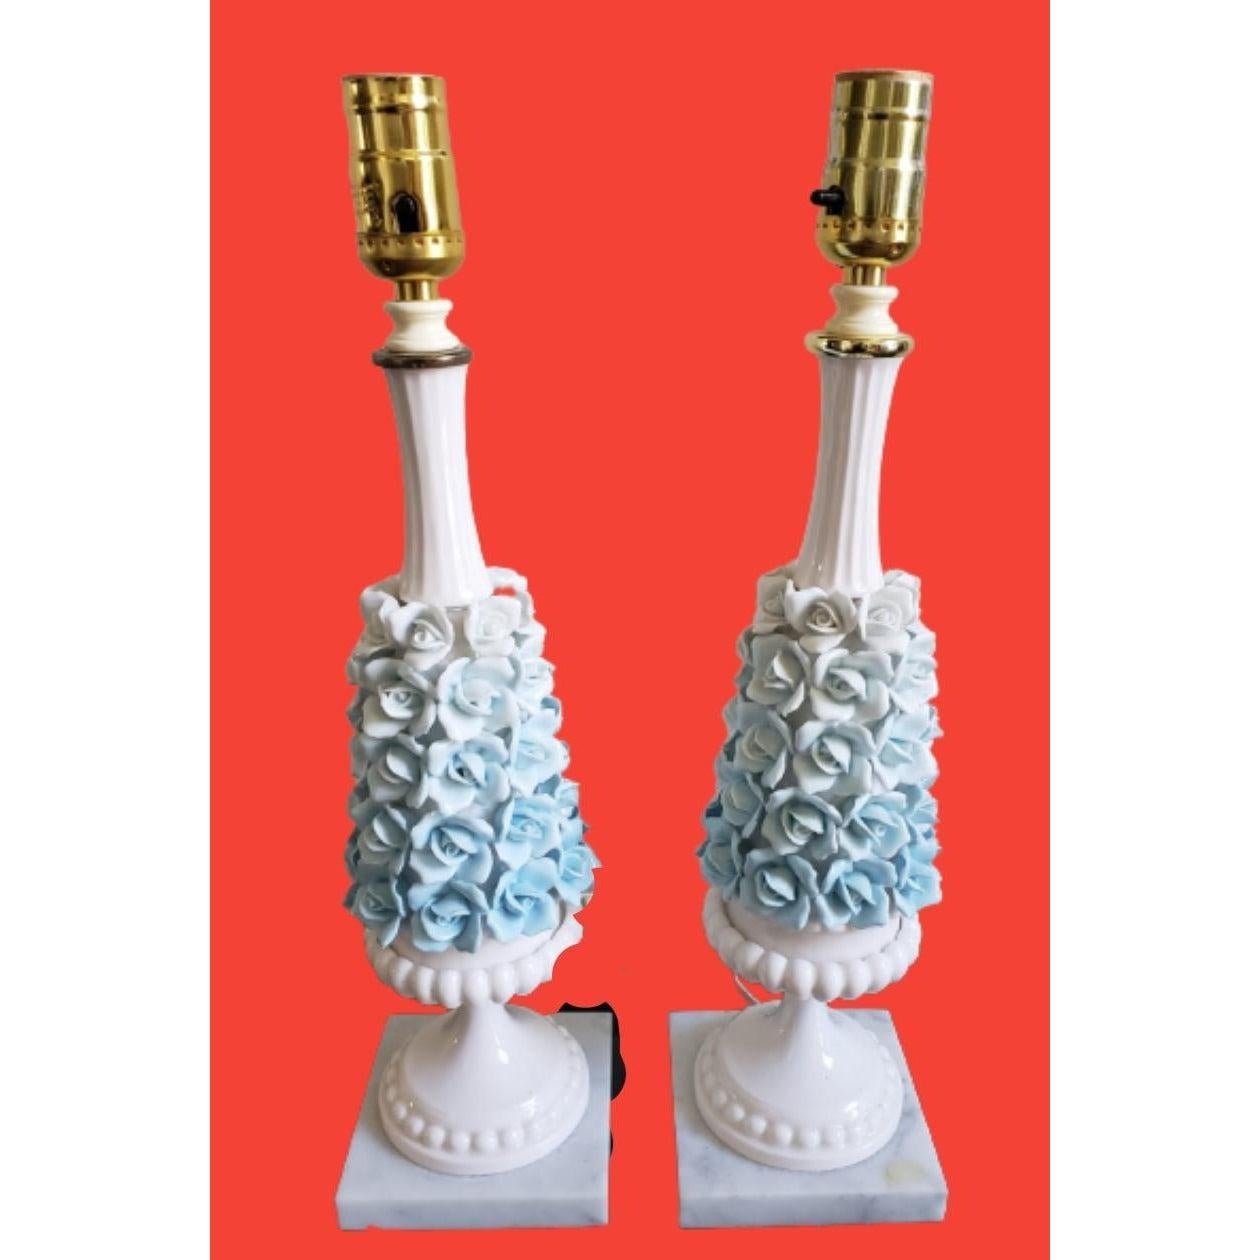 Capodimonte Blue Applied Roses Tischlampe mit Sockel aus Carrara-Marmor. Hergestellt in Italien. 

Diese Lampen sind einfach wunderschön. Die blauen und weißen Porzellanrosen sind sooo schön.

In ausgezeichnetem Zustand.
 